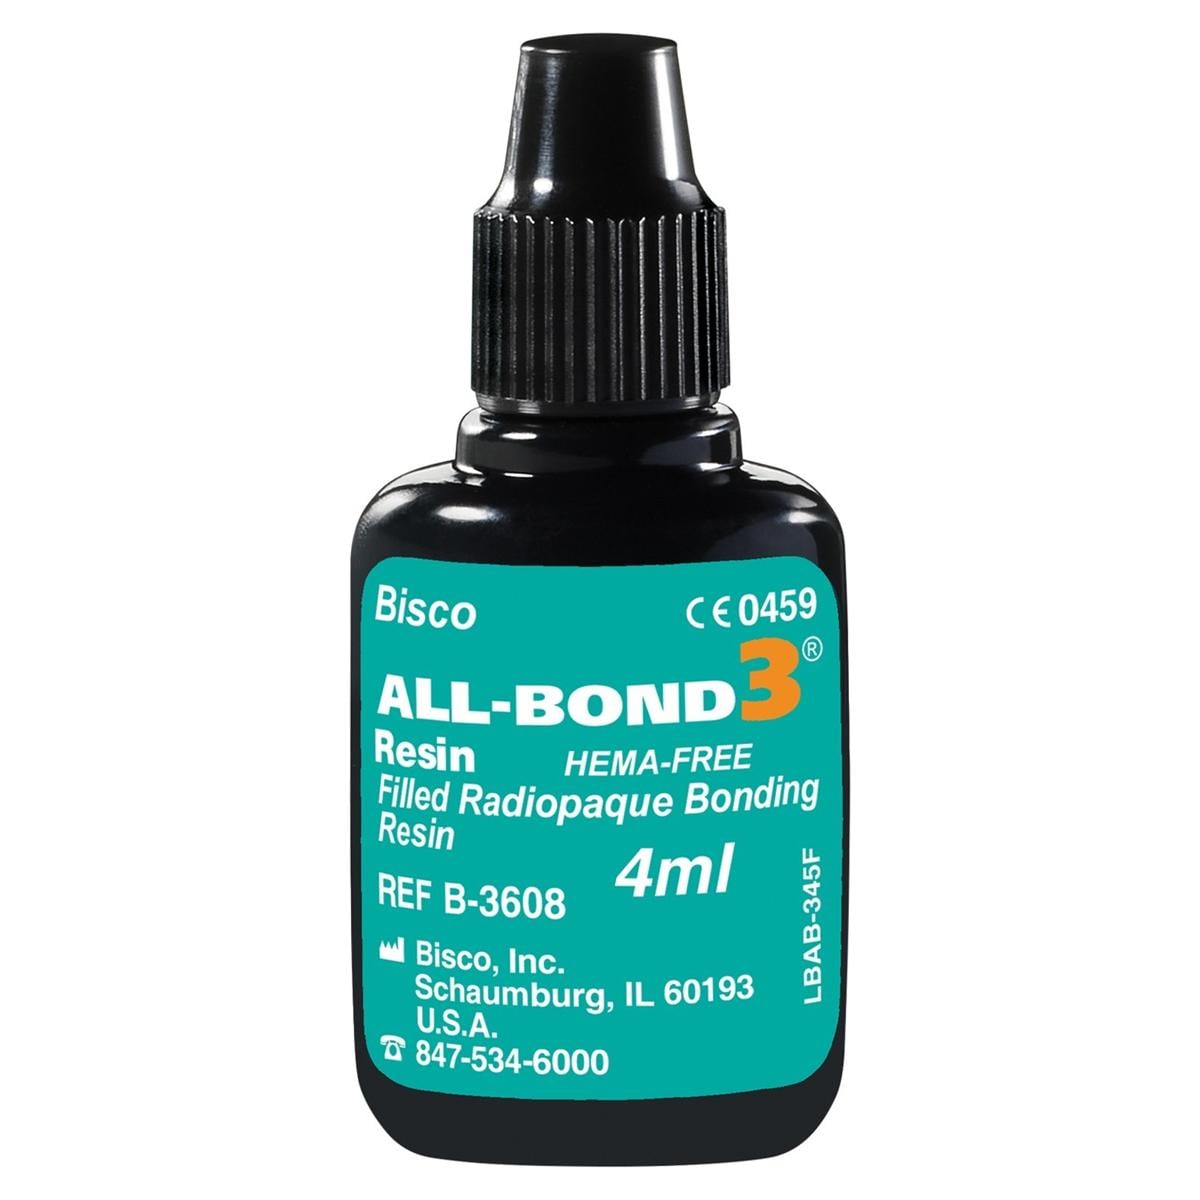 All-Bond 3 Resin - Verpakking, 4 ml